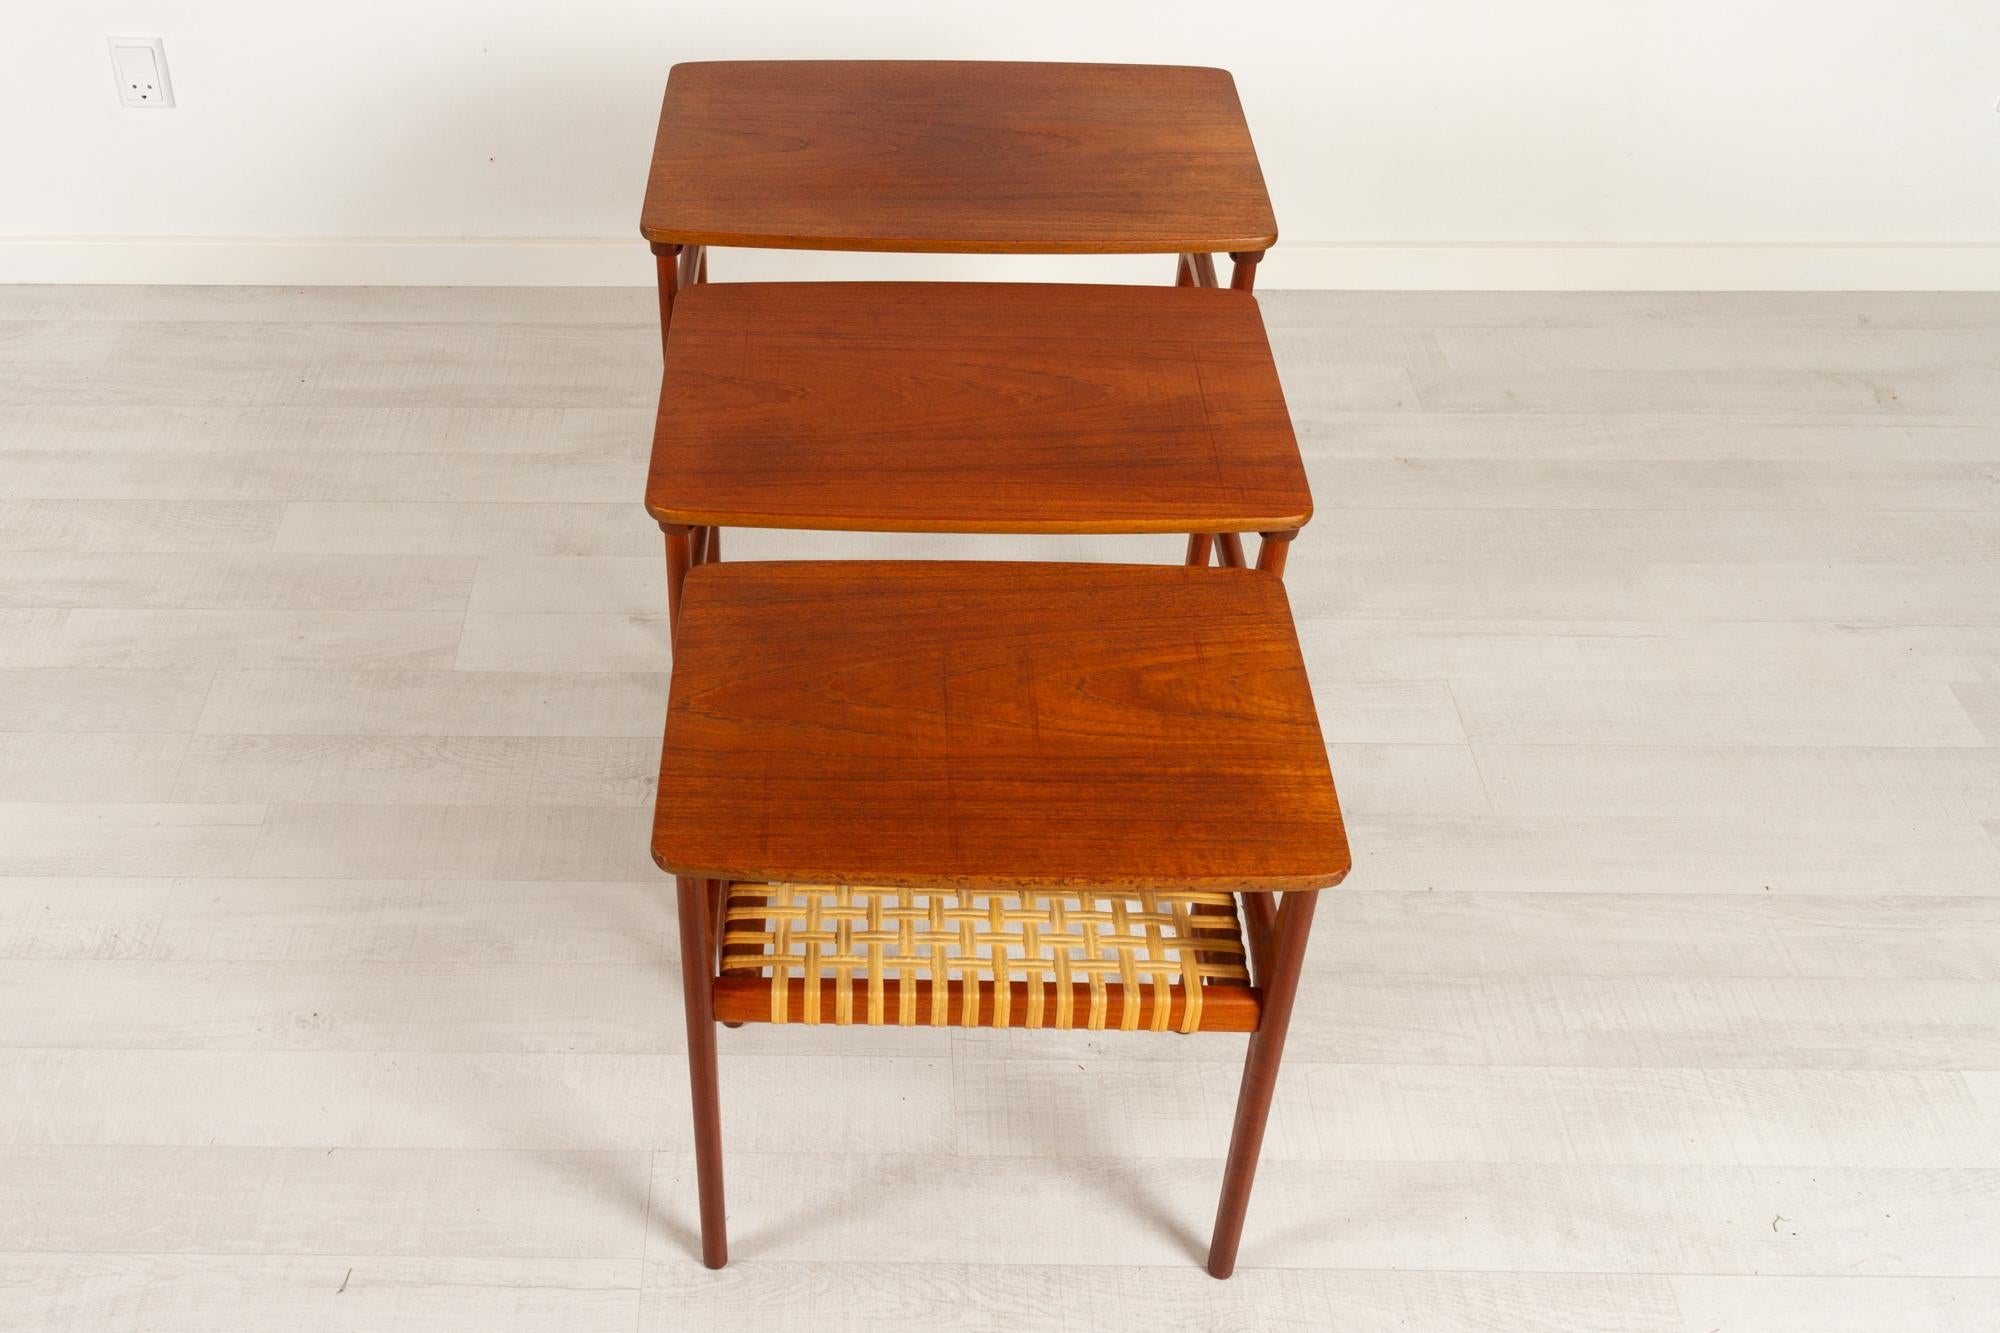 Vintage Danish Teak Nesting Tables by Erling Torvits for Heltborg Møbler 1950s For Sale 2